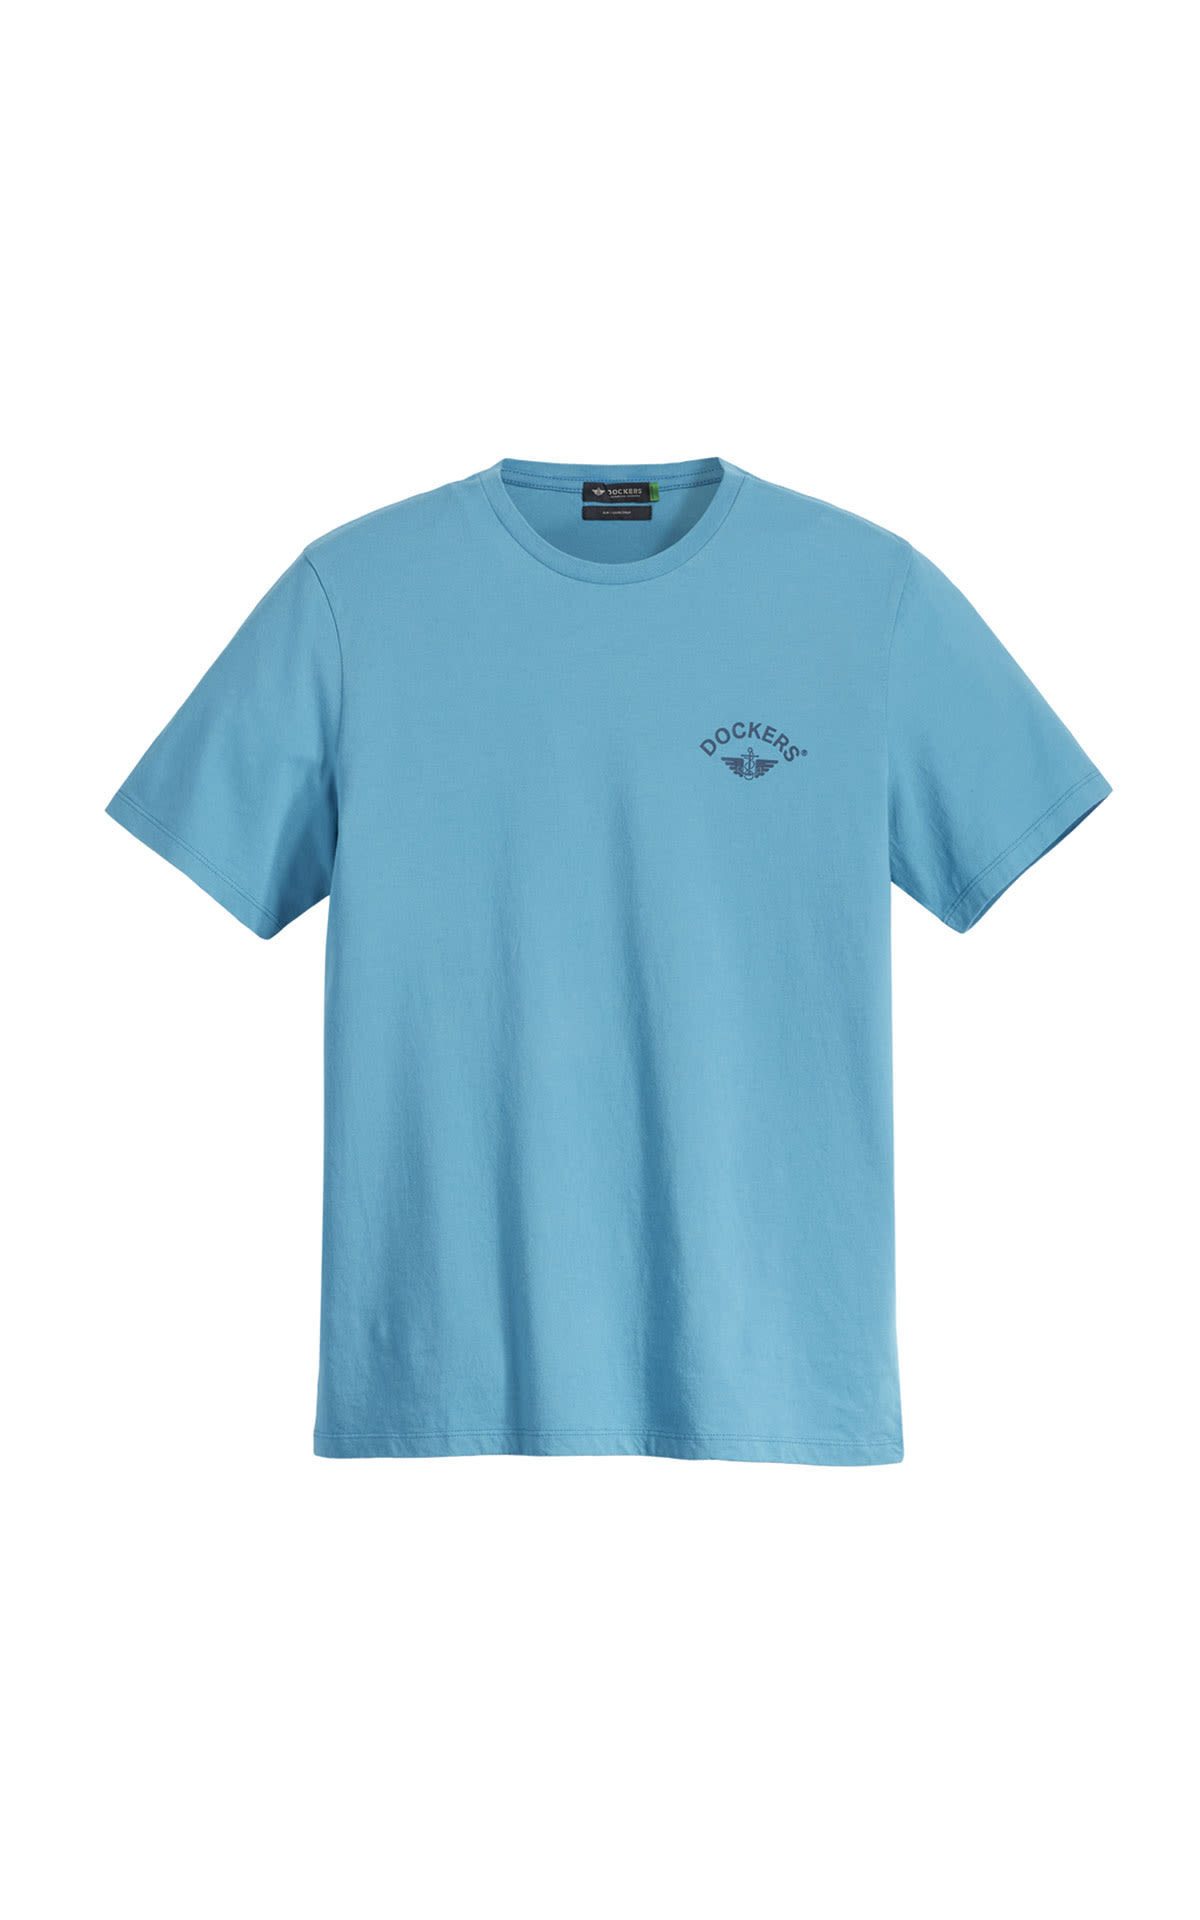 Camiseta azul marino Dockers